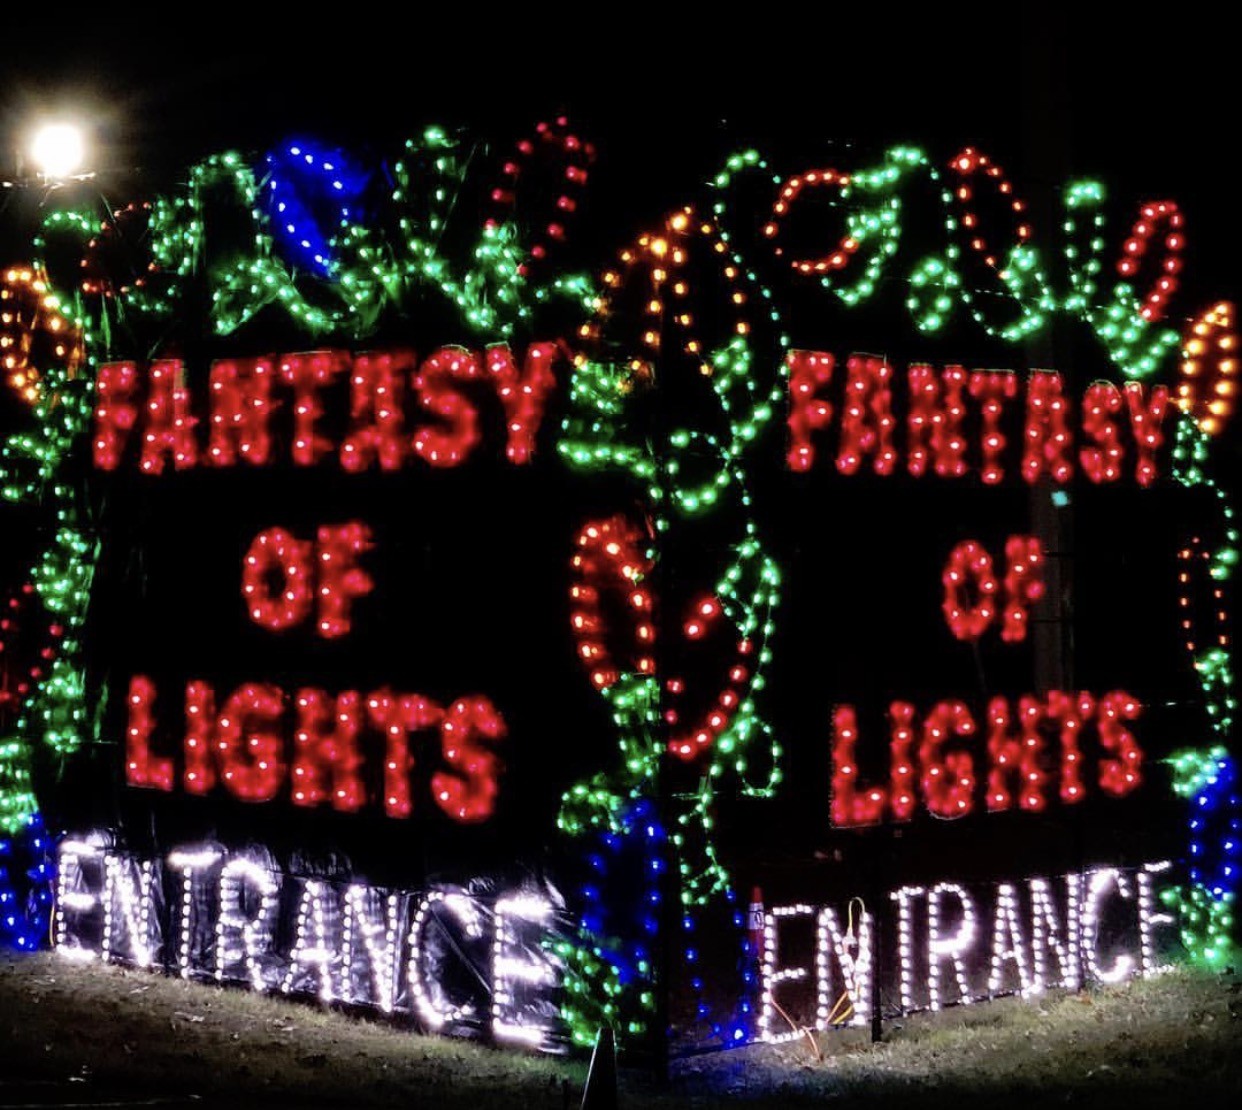 fantasy of lights